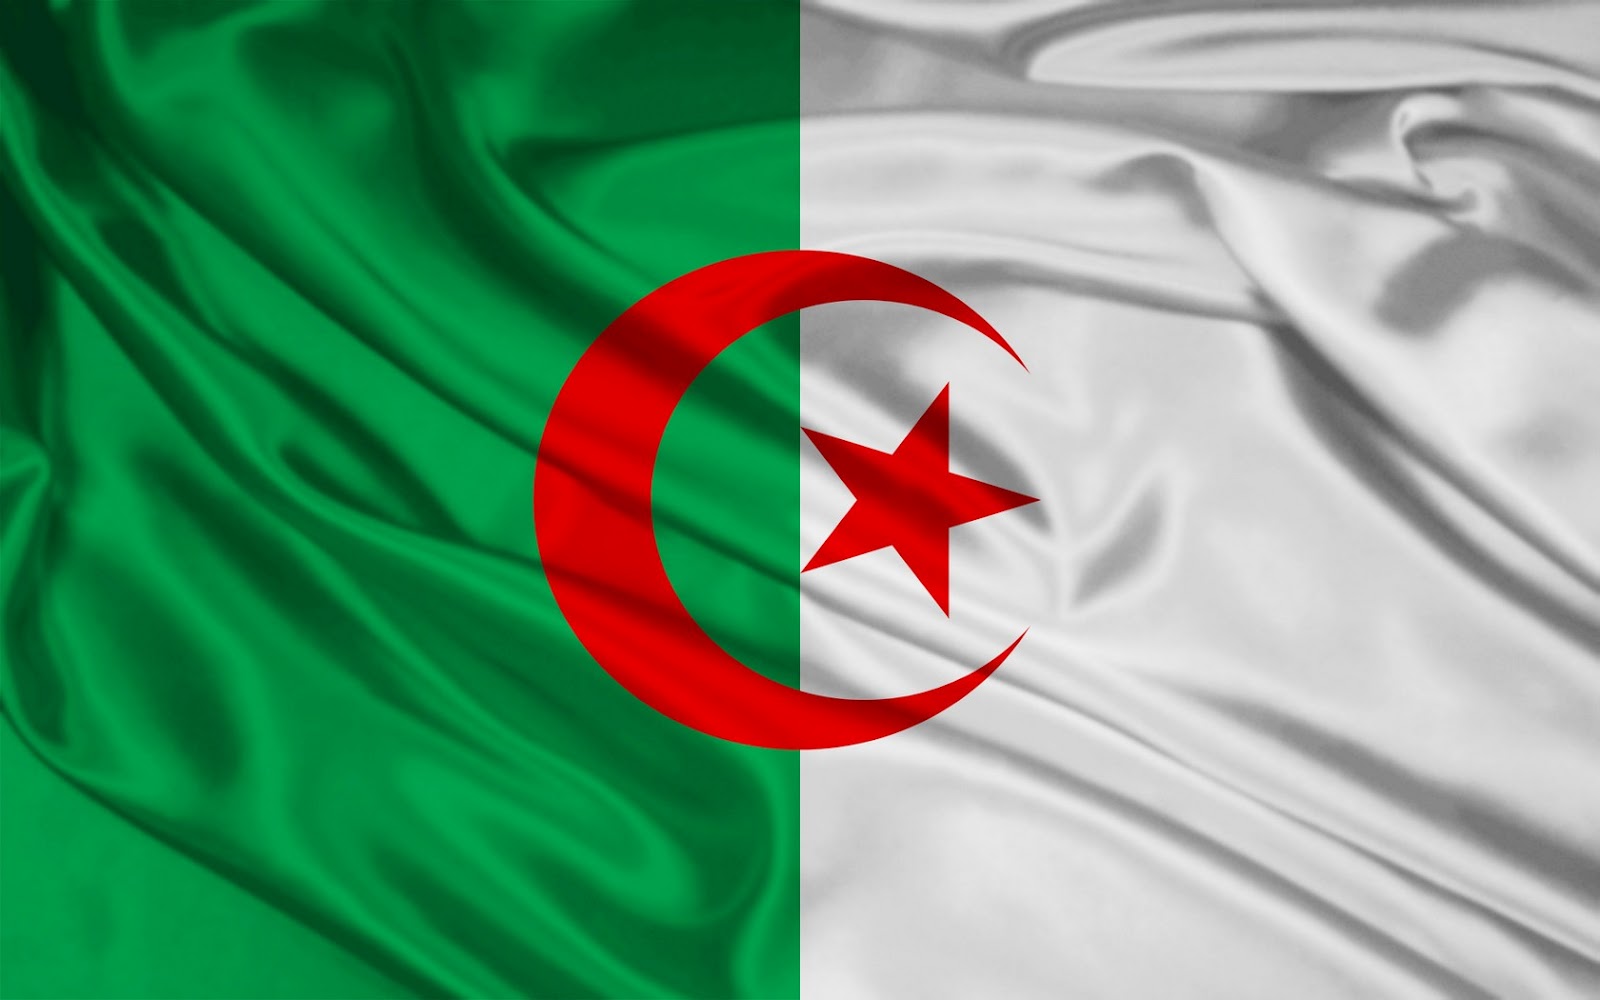 الجزائر تراجع قانون المحروقات لجذب رؤوس أموال جديدة